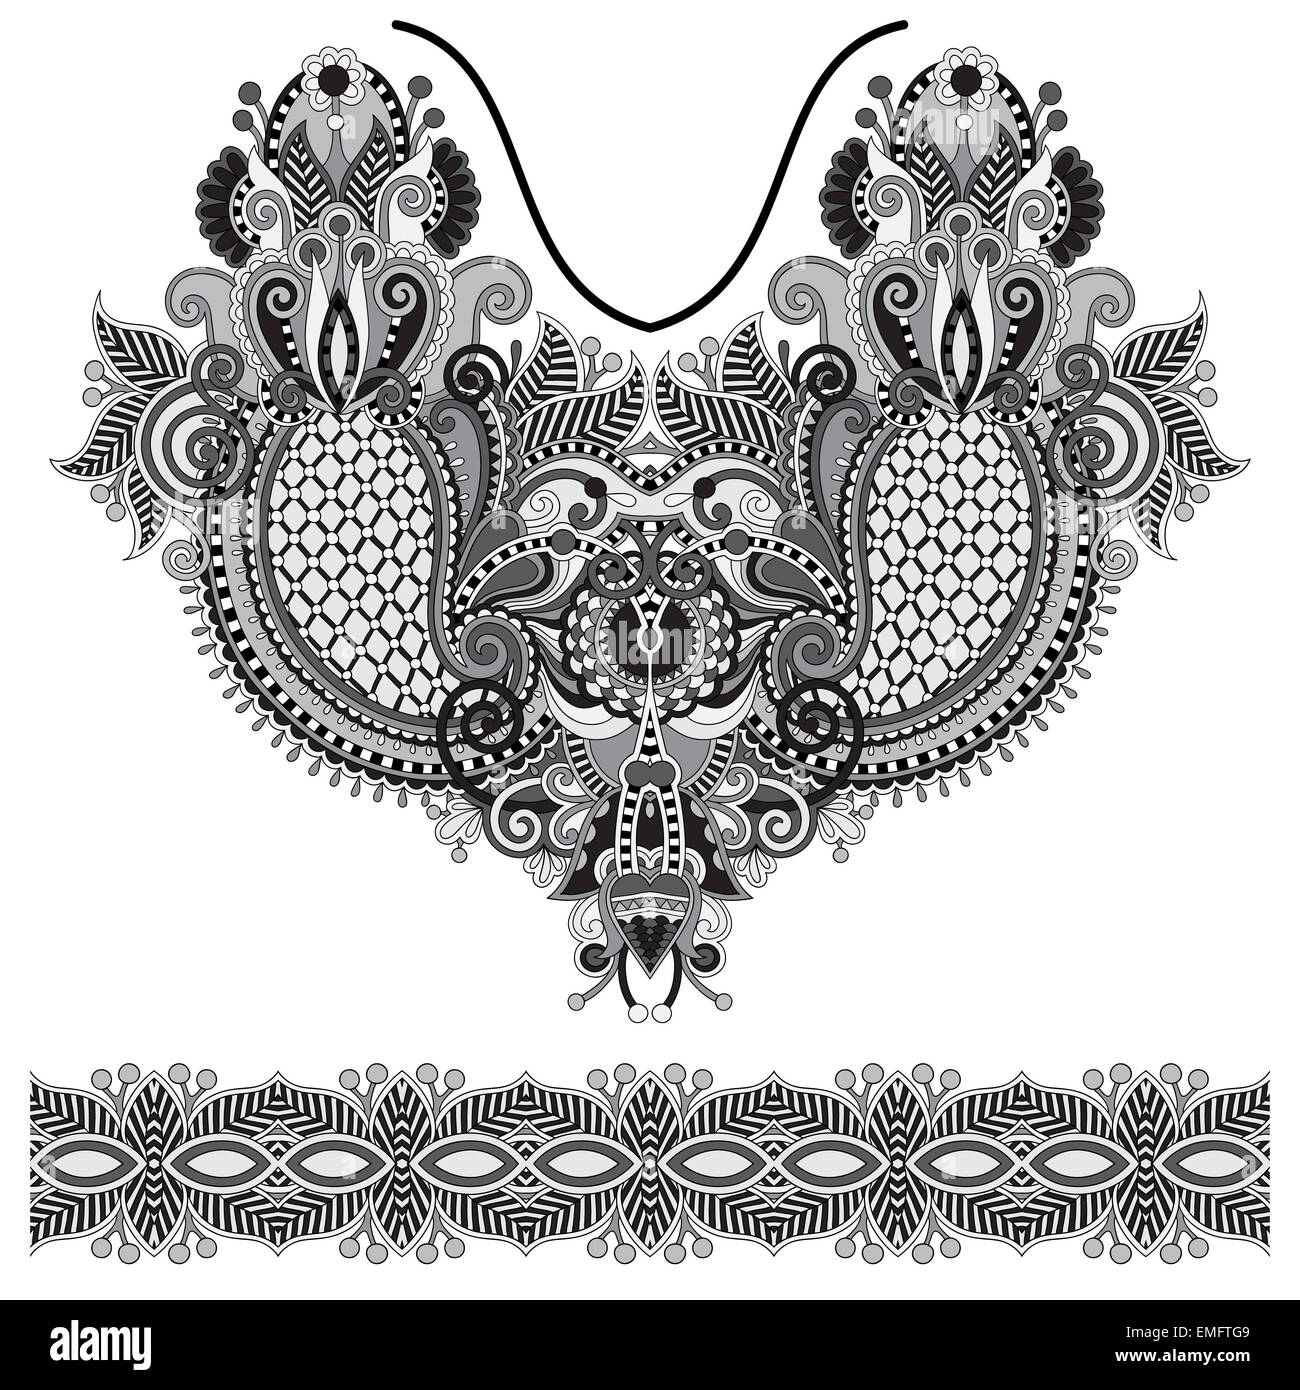 Neckline grey embroidery fashion Stock Photo - Alamy